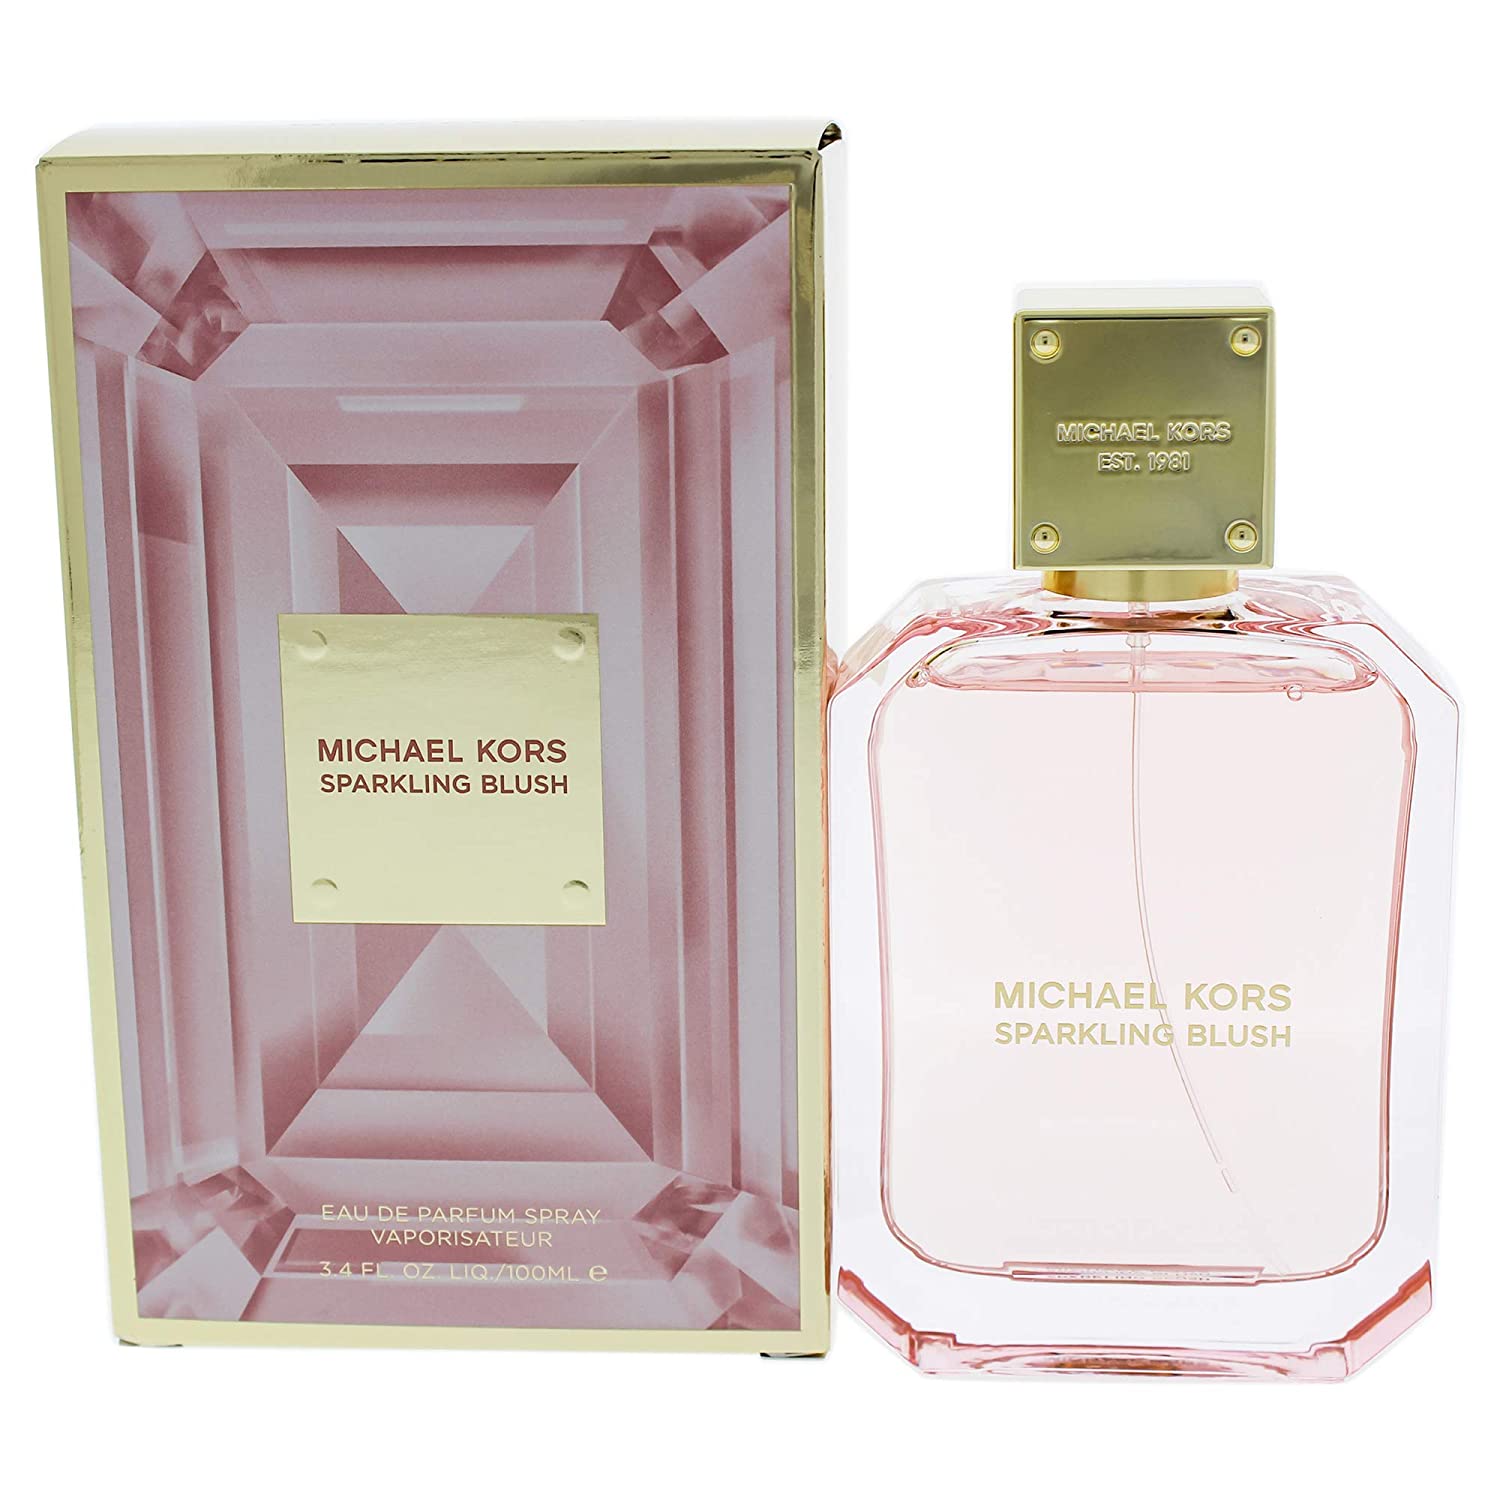 Michael Kors perfume for women - Michael Kors Sparkling Blush Eau de Parfum